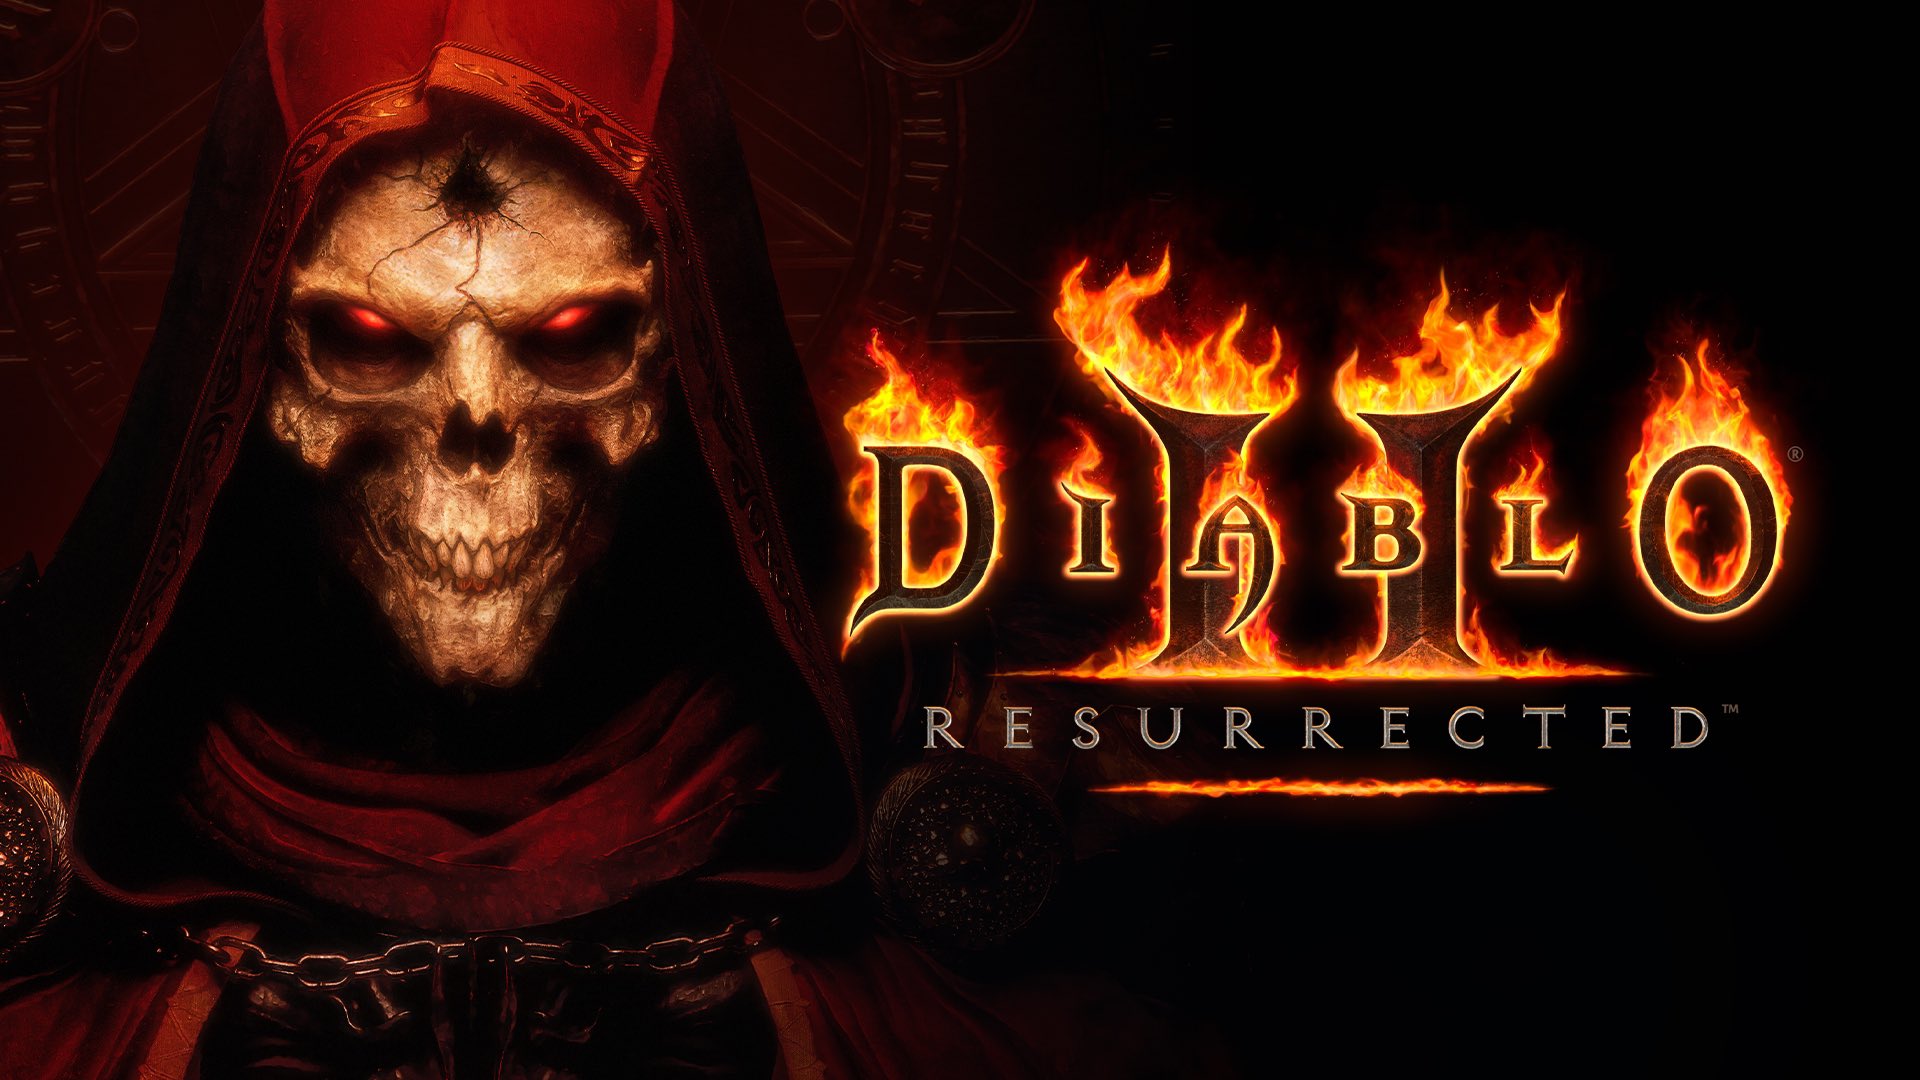 Diablo II Resurrected เกิดช่องโหว่เกม ไม่ล็อกอินเกิน 30 วัน จะไม่สามารถเข้าเล่นเกมได้